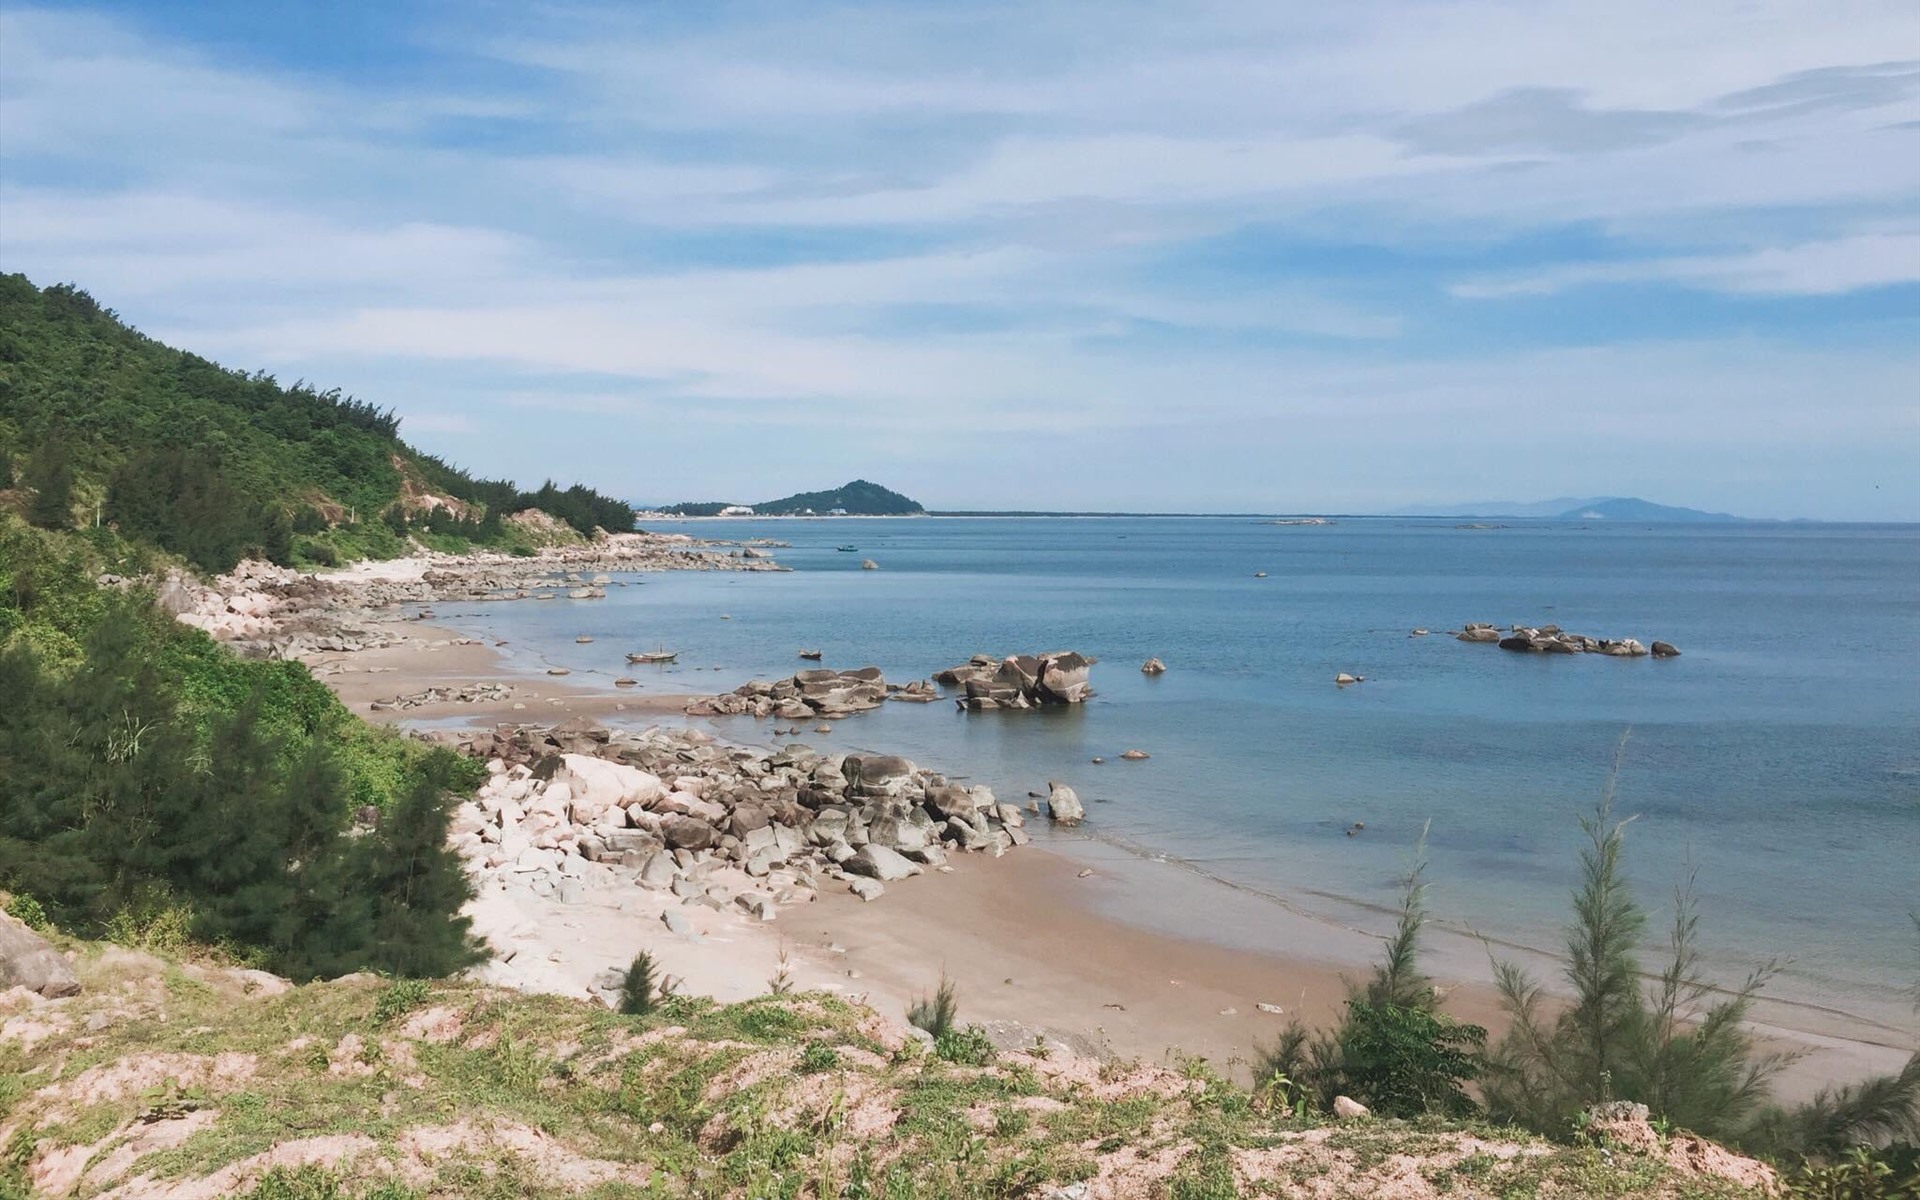 Khám phá vẻ đẹp của biển Thiên Cầm, địa điểm du lịch được mệnh danh là "khúc đàn trời" của vùng đất Hà Tĩnh